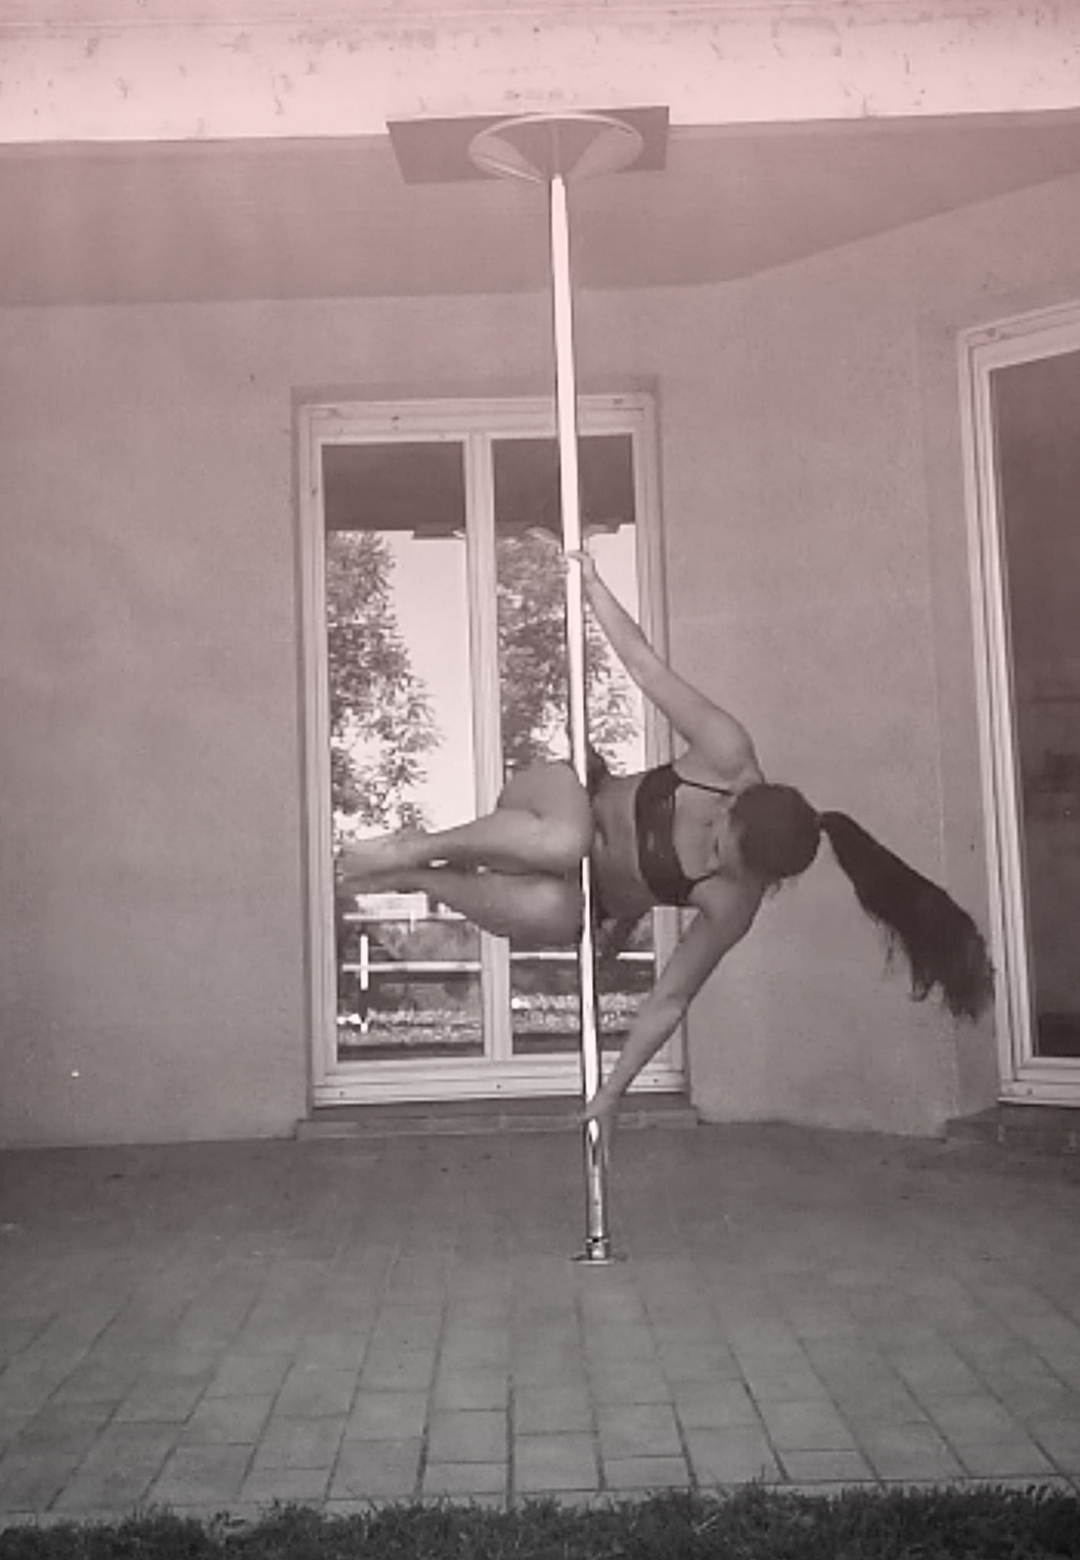 Cradle pole dance